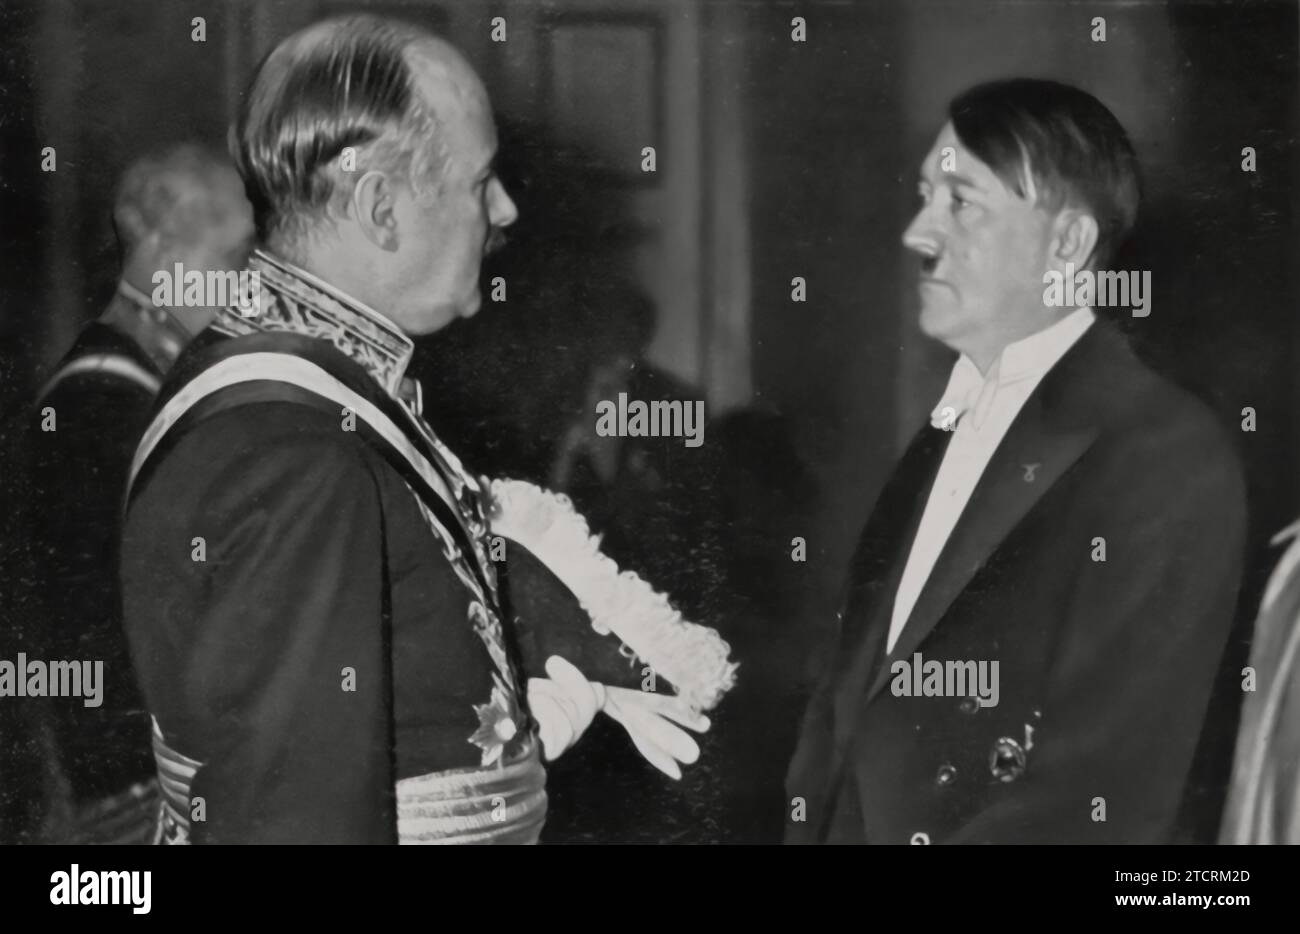 Adolf Hitler, chancelier du Reich, est montré engagé dans une conversation avec l'ambassadeur de France, André François-Poncet, lors d'une réception du nouvel an. Cette interaction représente un moment de diplomatie de haut niveau entre l’Allemagne nazie et la France. Banque D'Images